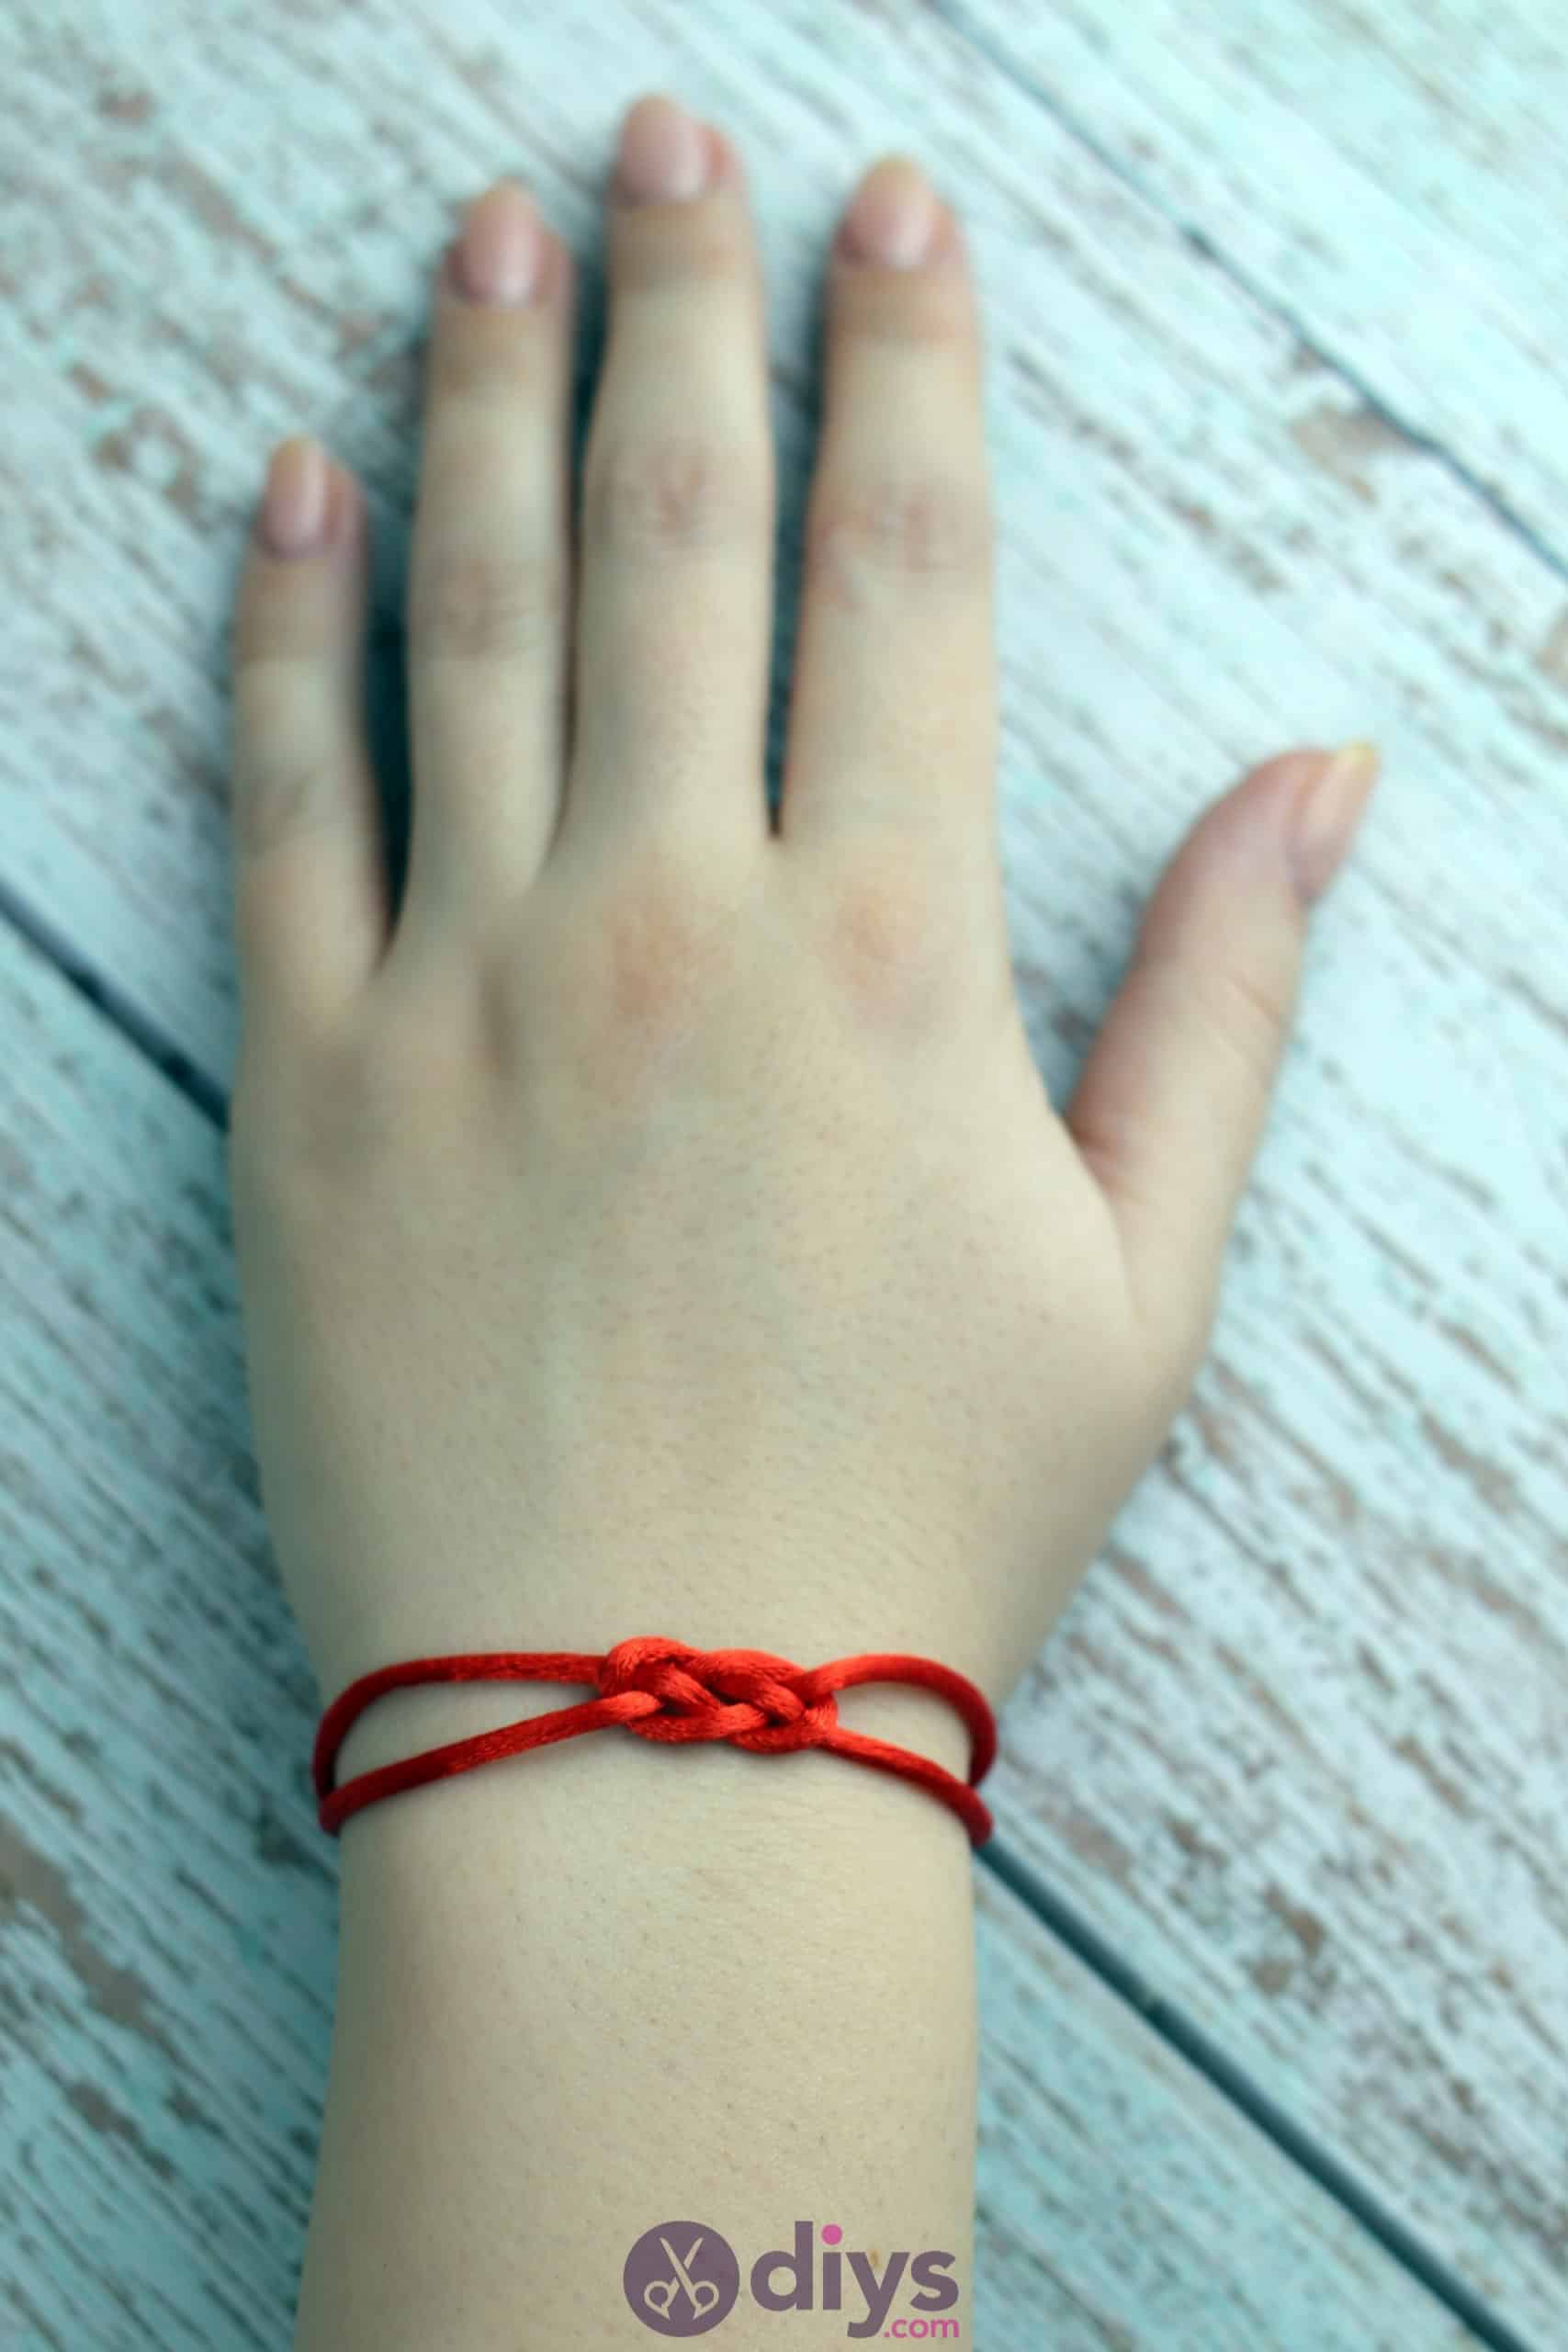 Diy knotted bracelet